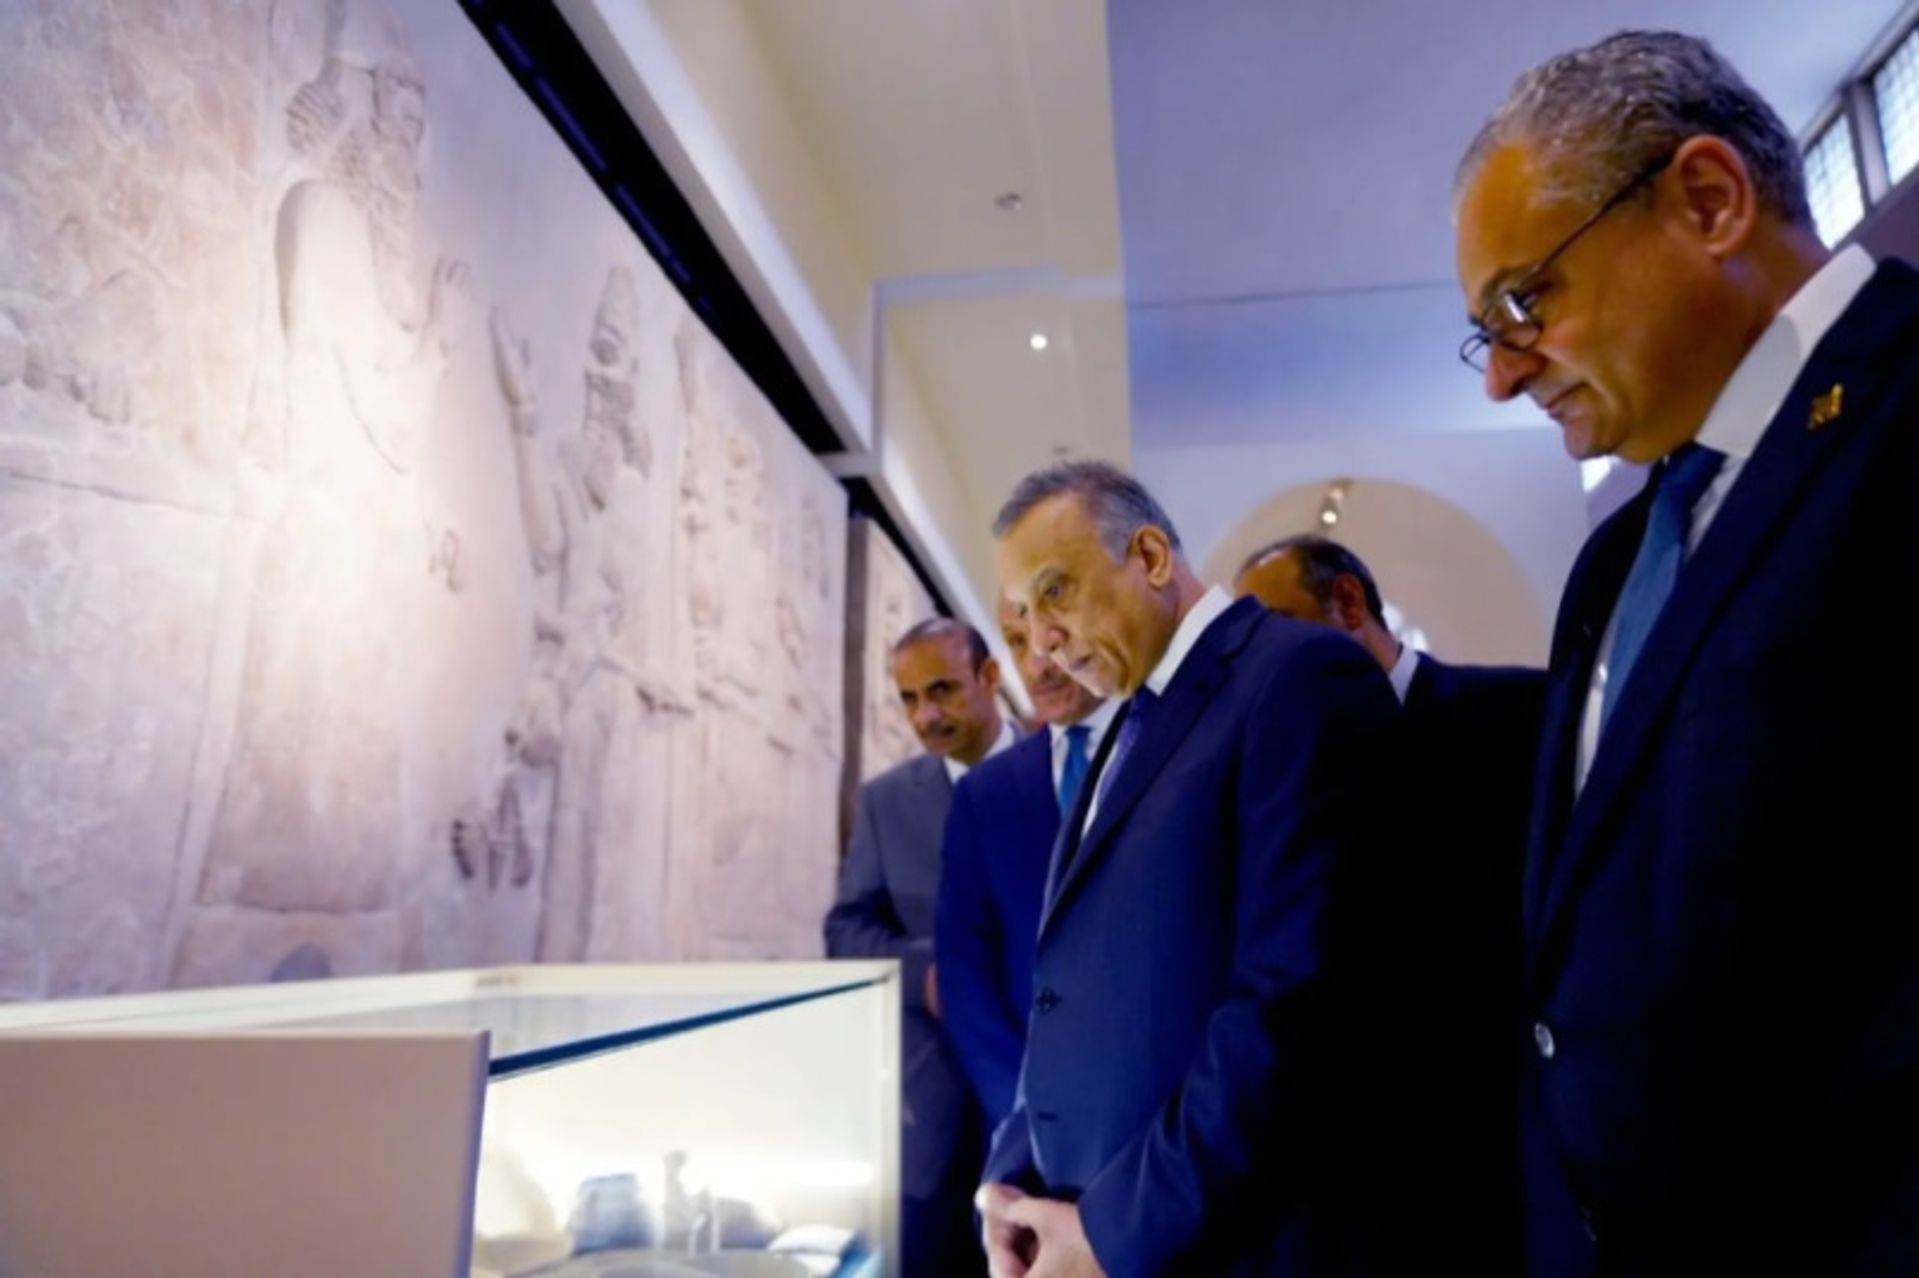 ראש ממשלת עיראק מוסטפא אל קדימי השתתף בחנוכה הרשמית של מוזיאון עיראק ב-6 במרץ, לקראת פתיחתו הפומבית מחדש